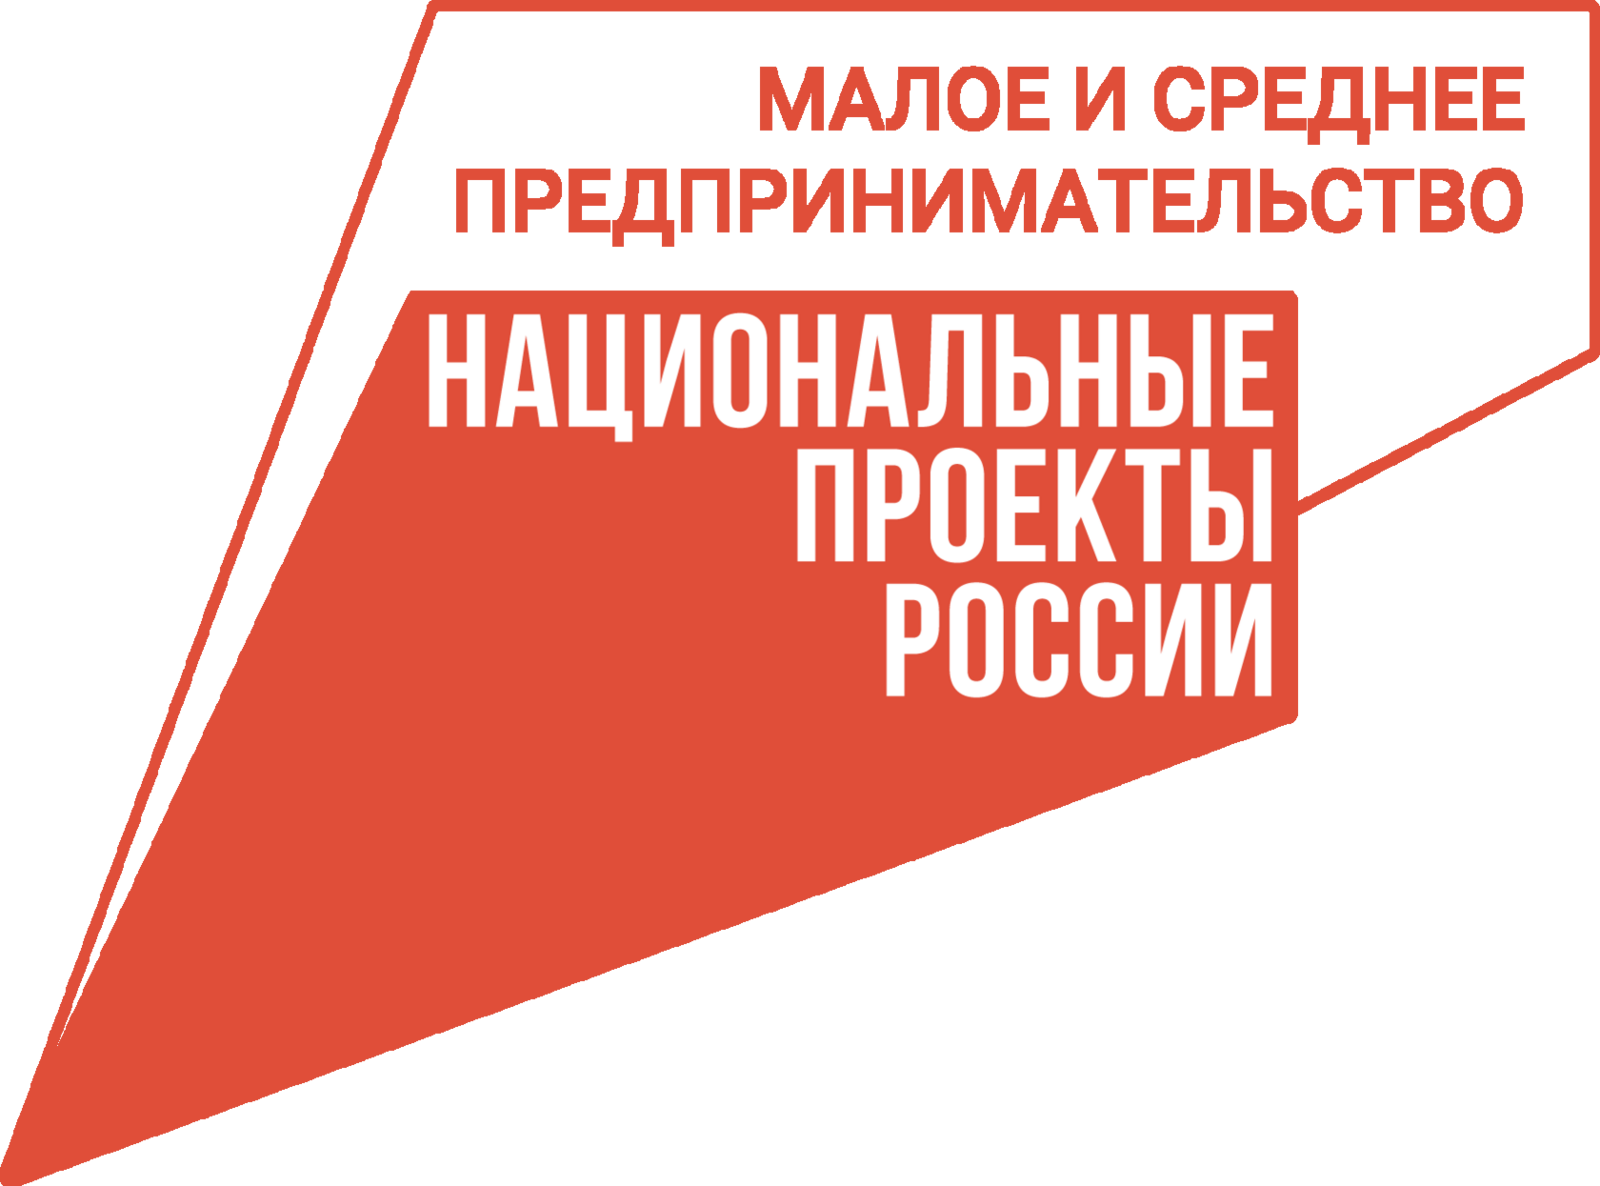 АО «Региональная лизинговая компания Республики Башкортостан» и ФРП РФ заключили первую совместную сделку